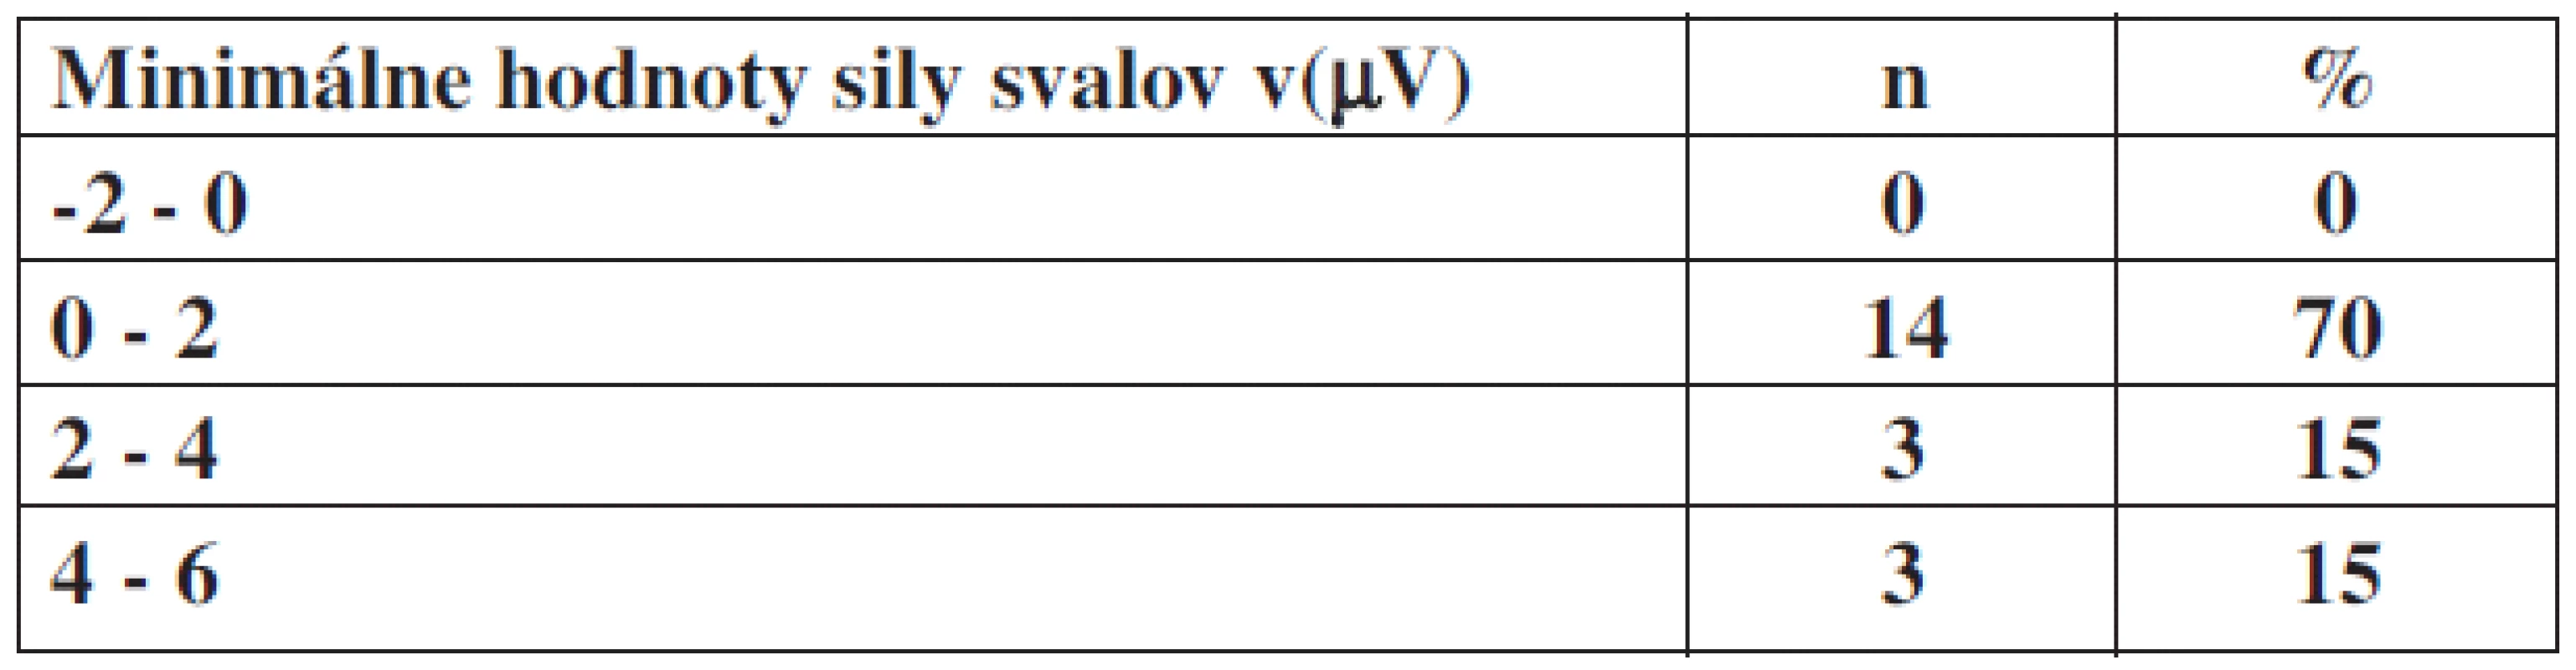 Minimálne hodnoty sily svalov panvového dna v(μV) v percentuálnom zastúpení u pacientok bez inkontinencie.